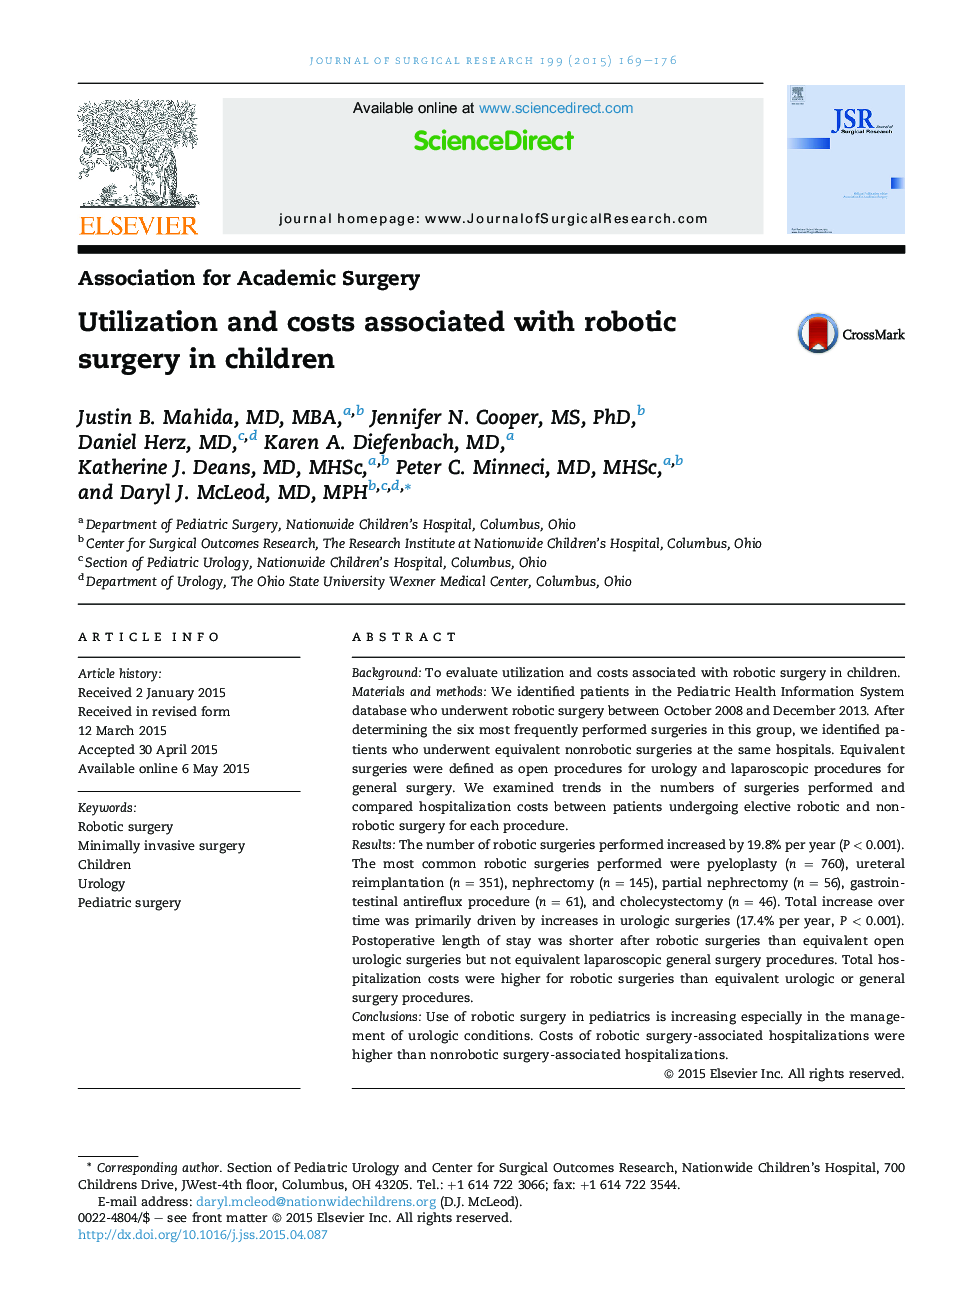 استفاده و هزینه های جراحی روبوتیک در کودکان 